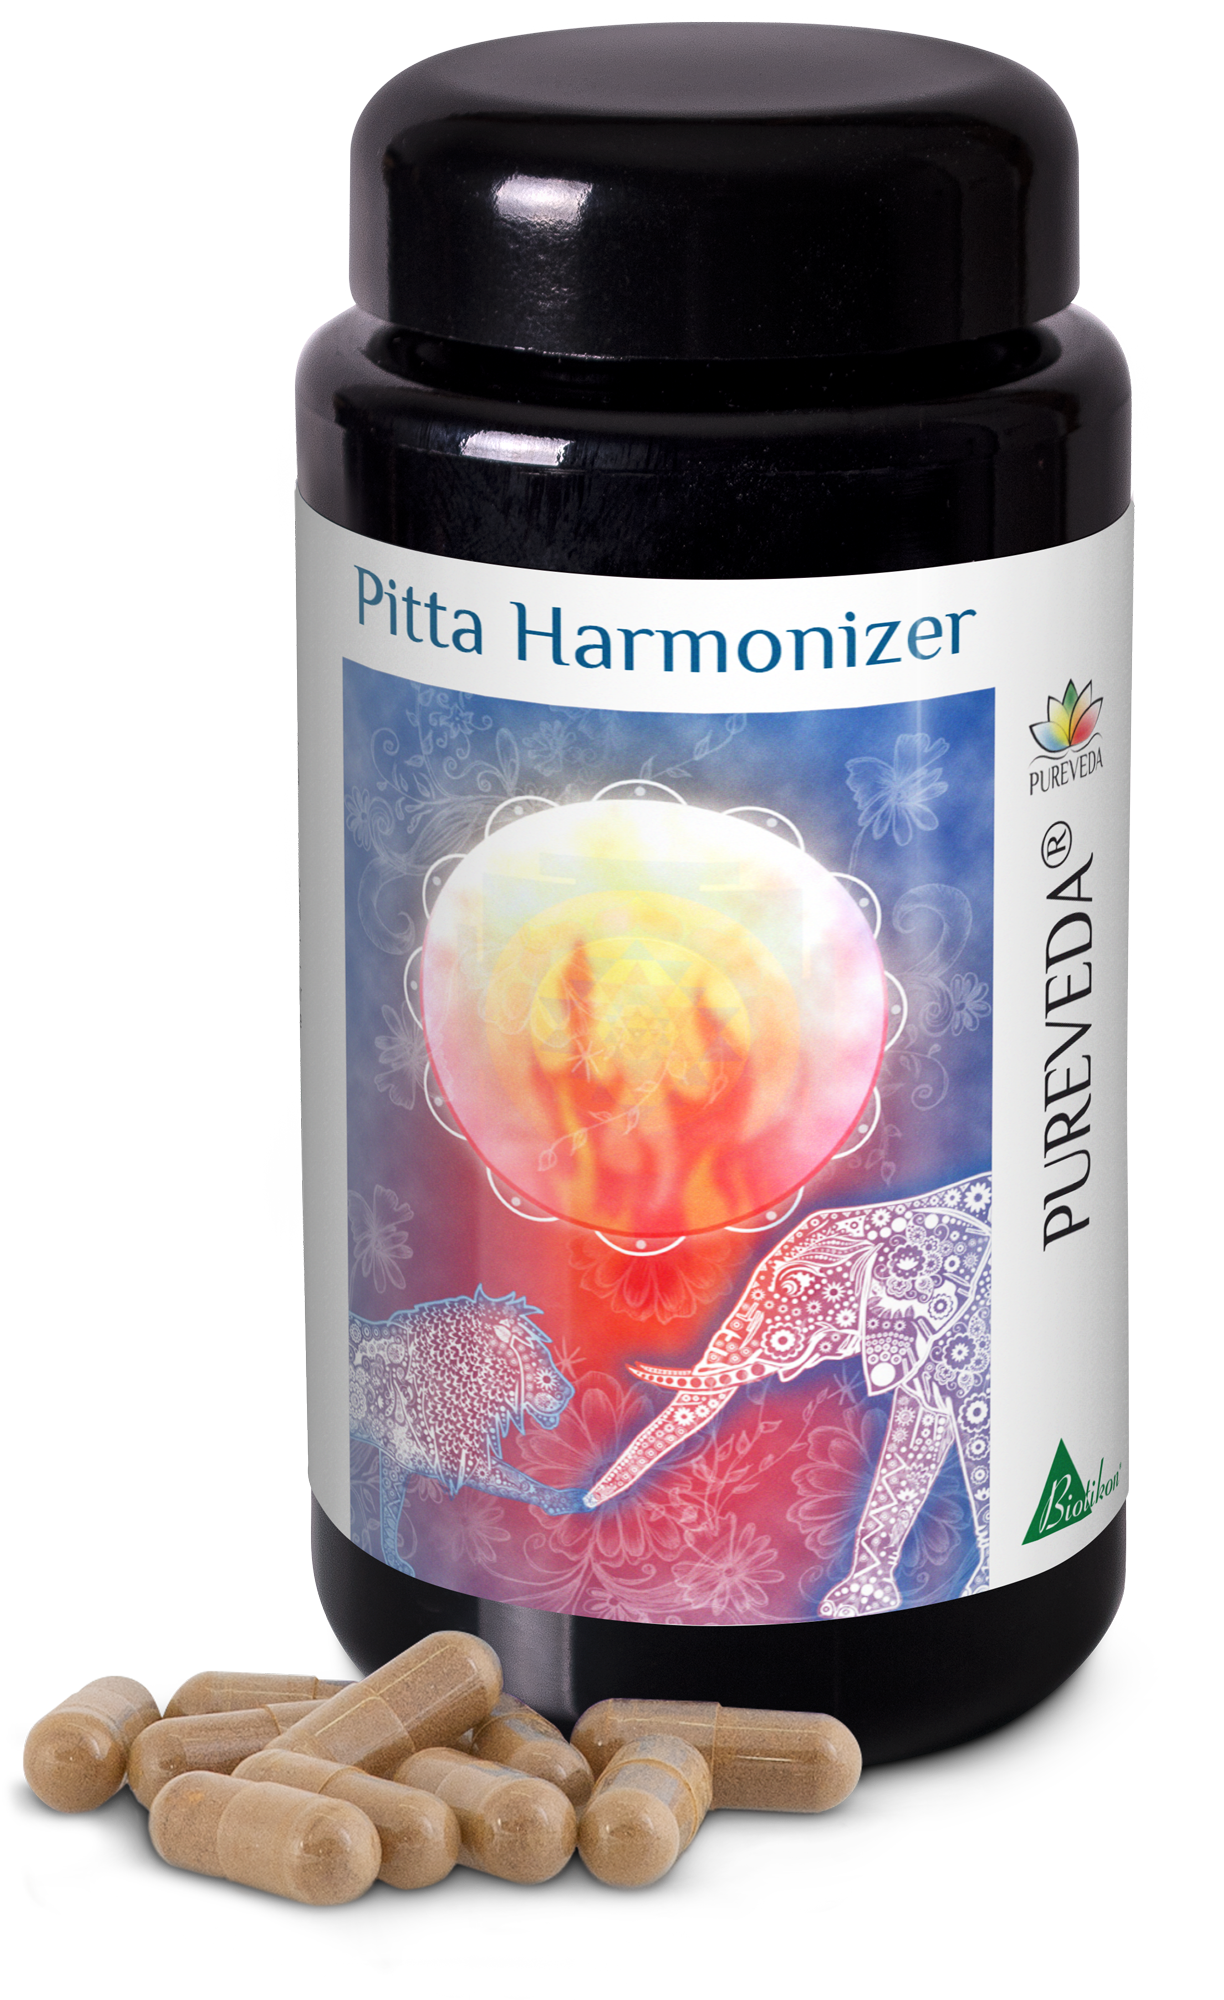 Pitta Harmonizer